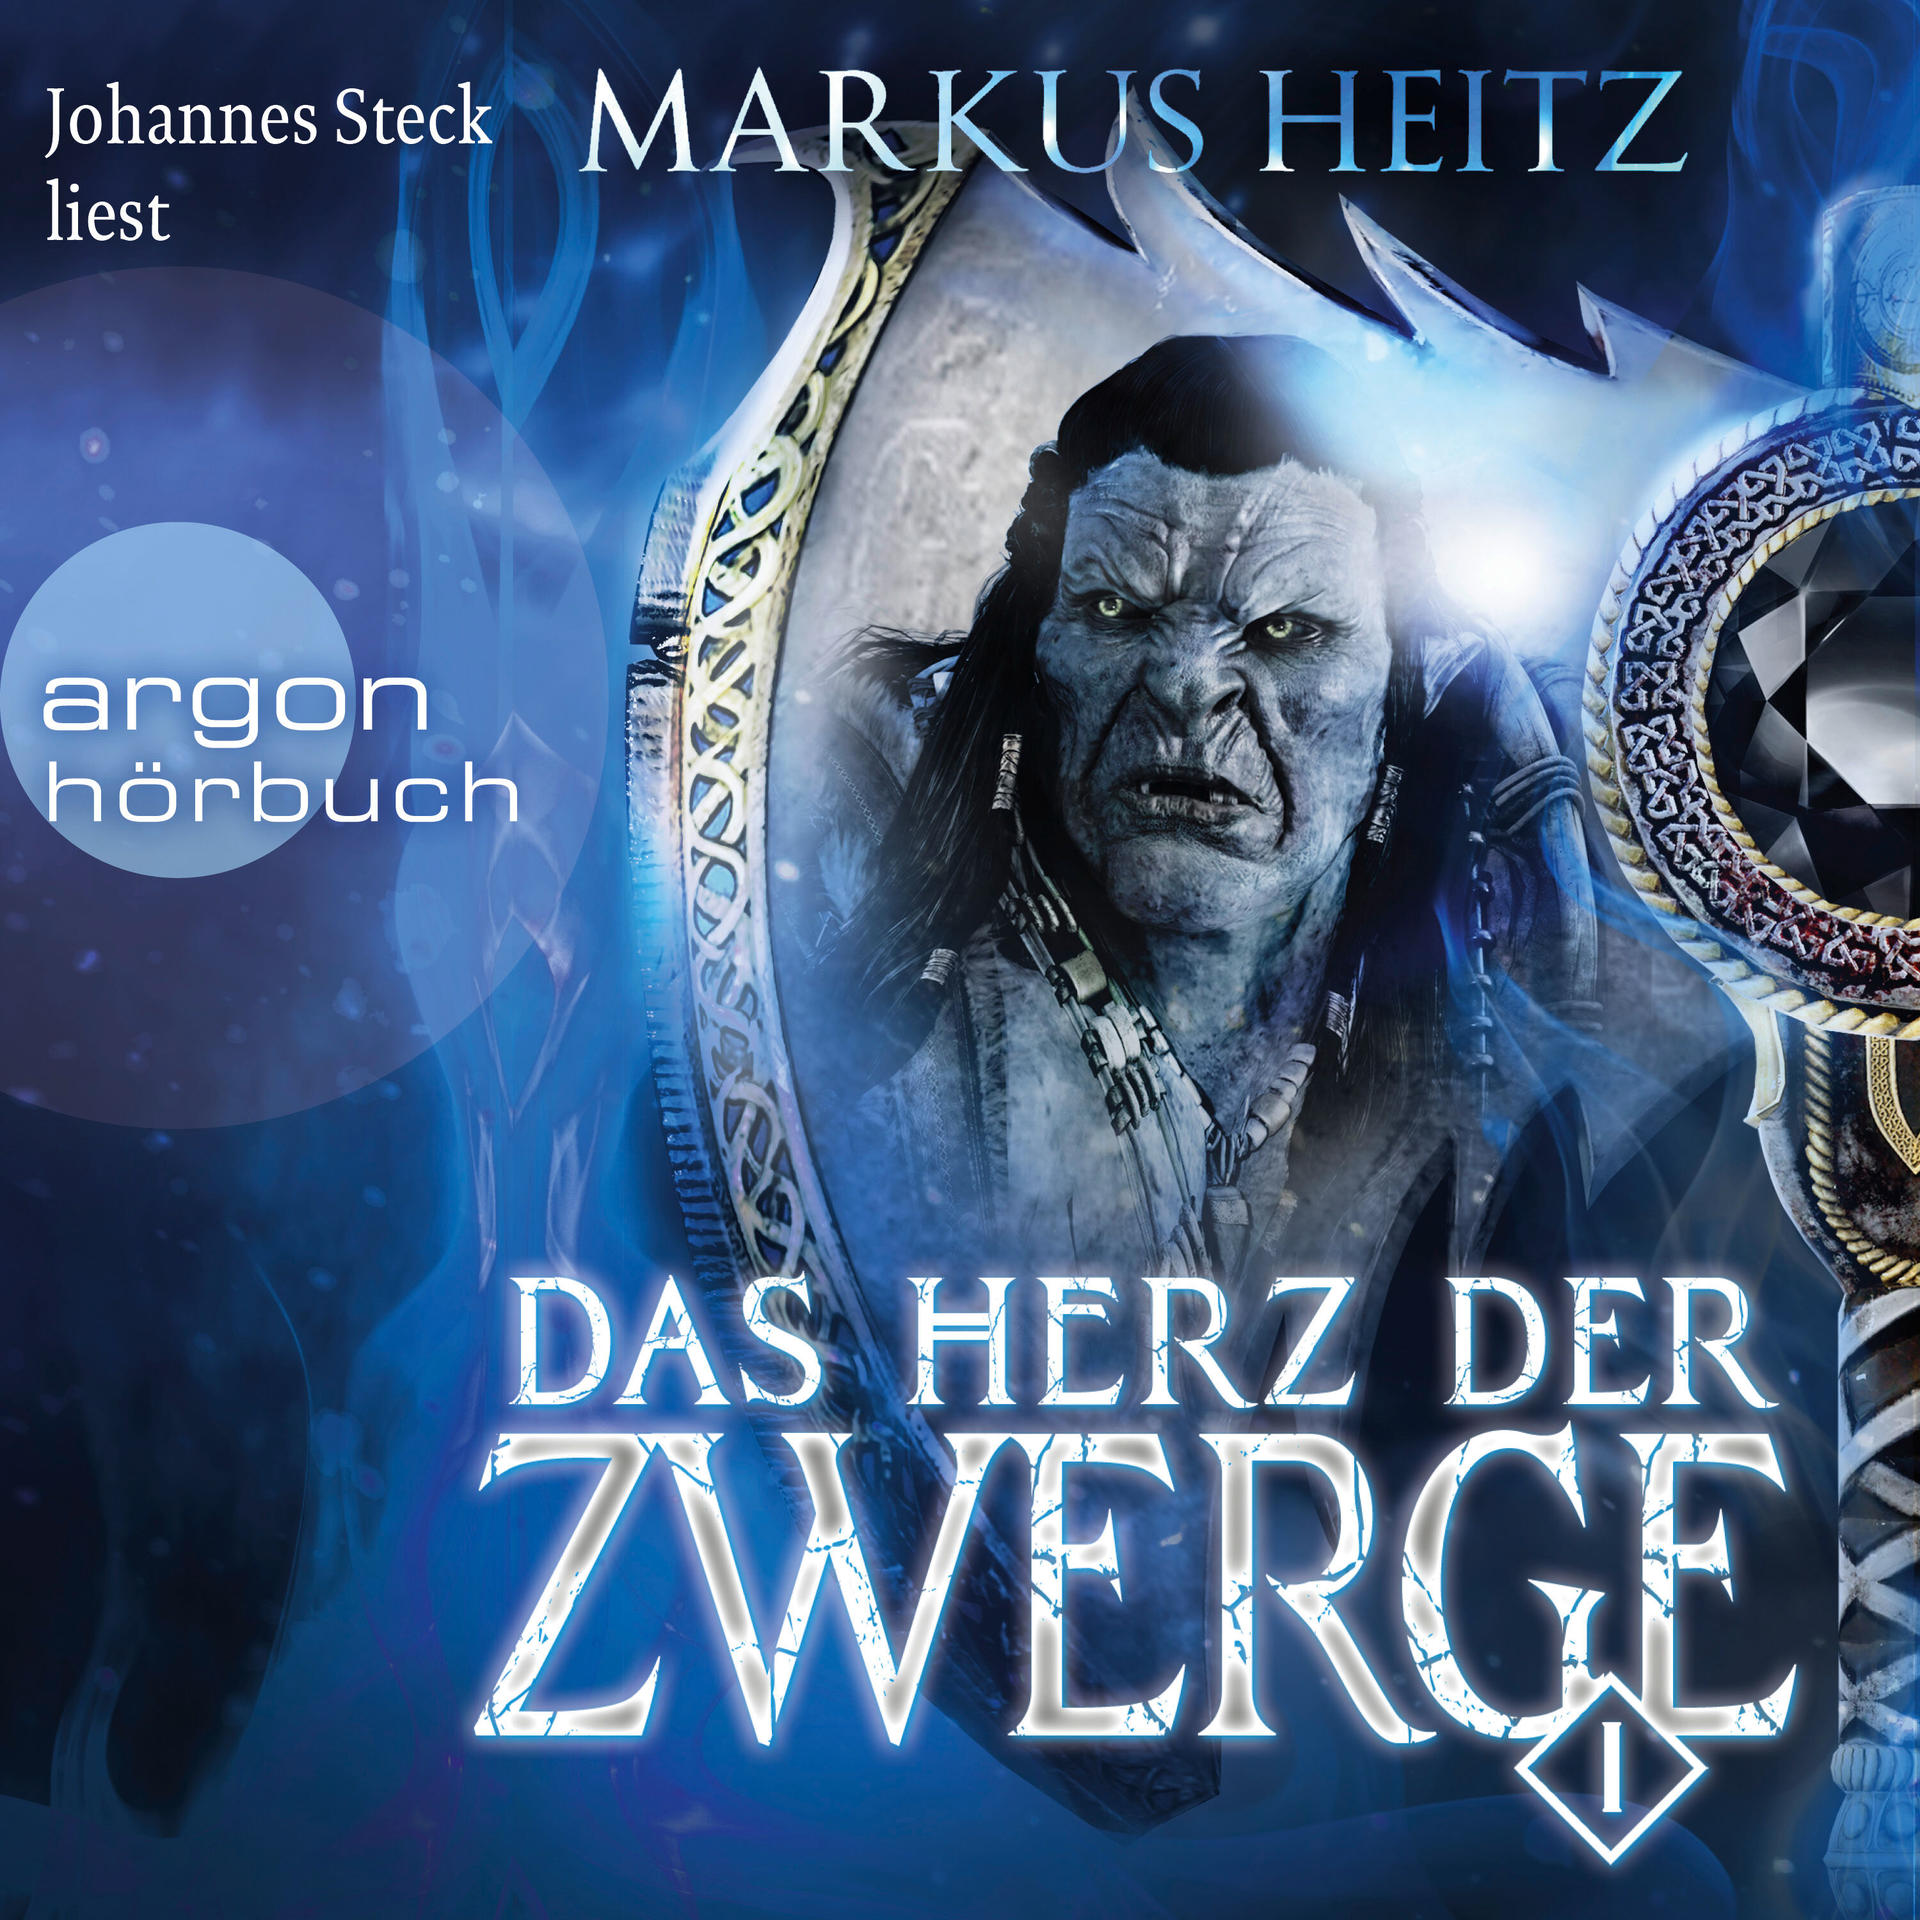 Johannes Steck 1 - Herz - der Zwerge Das (MP3-CD)